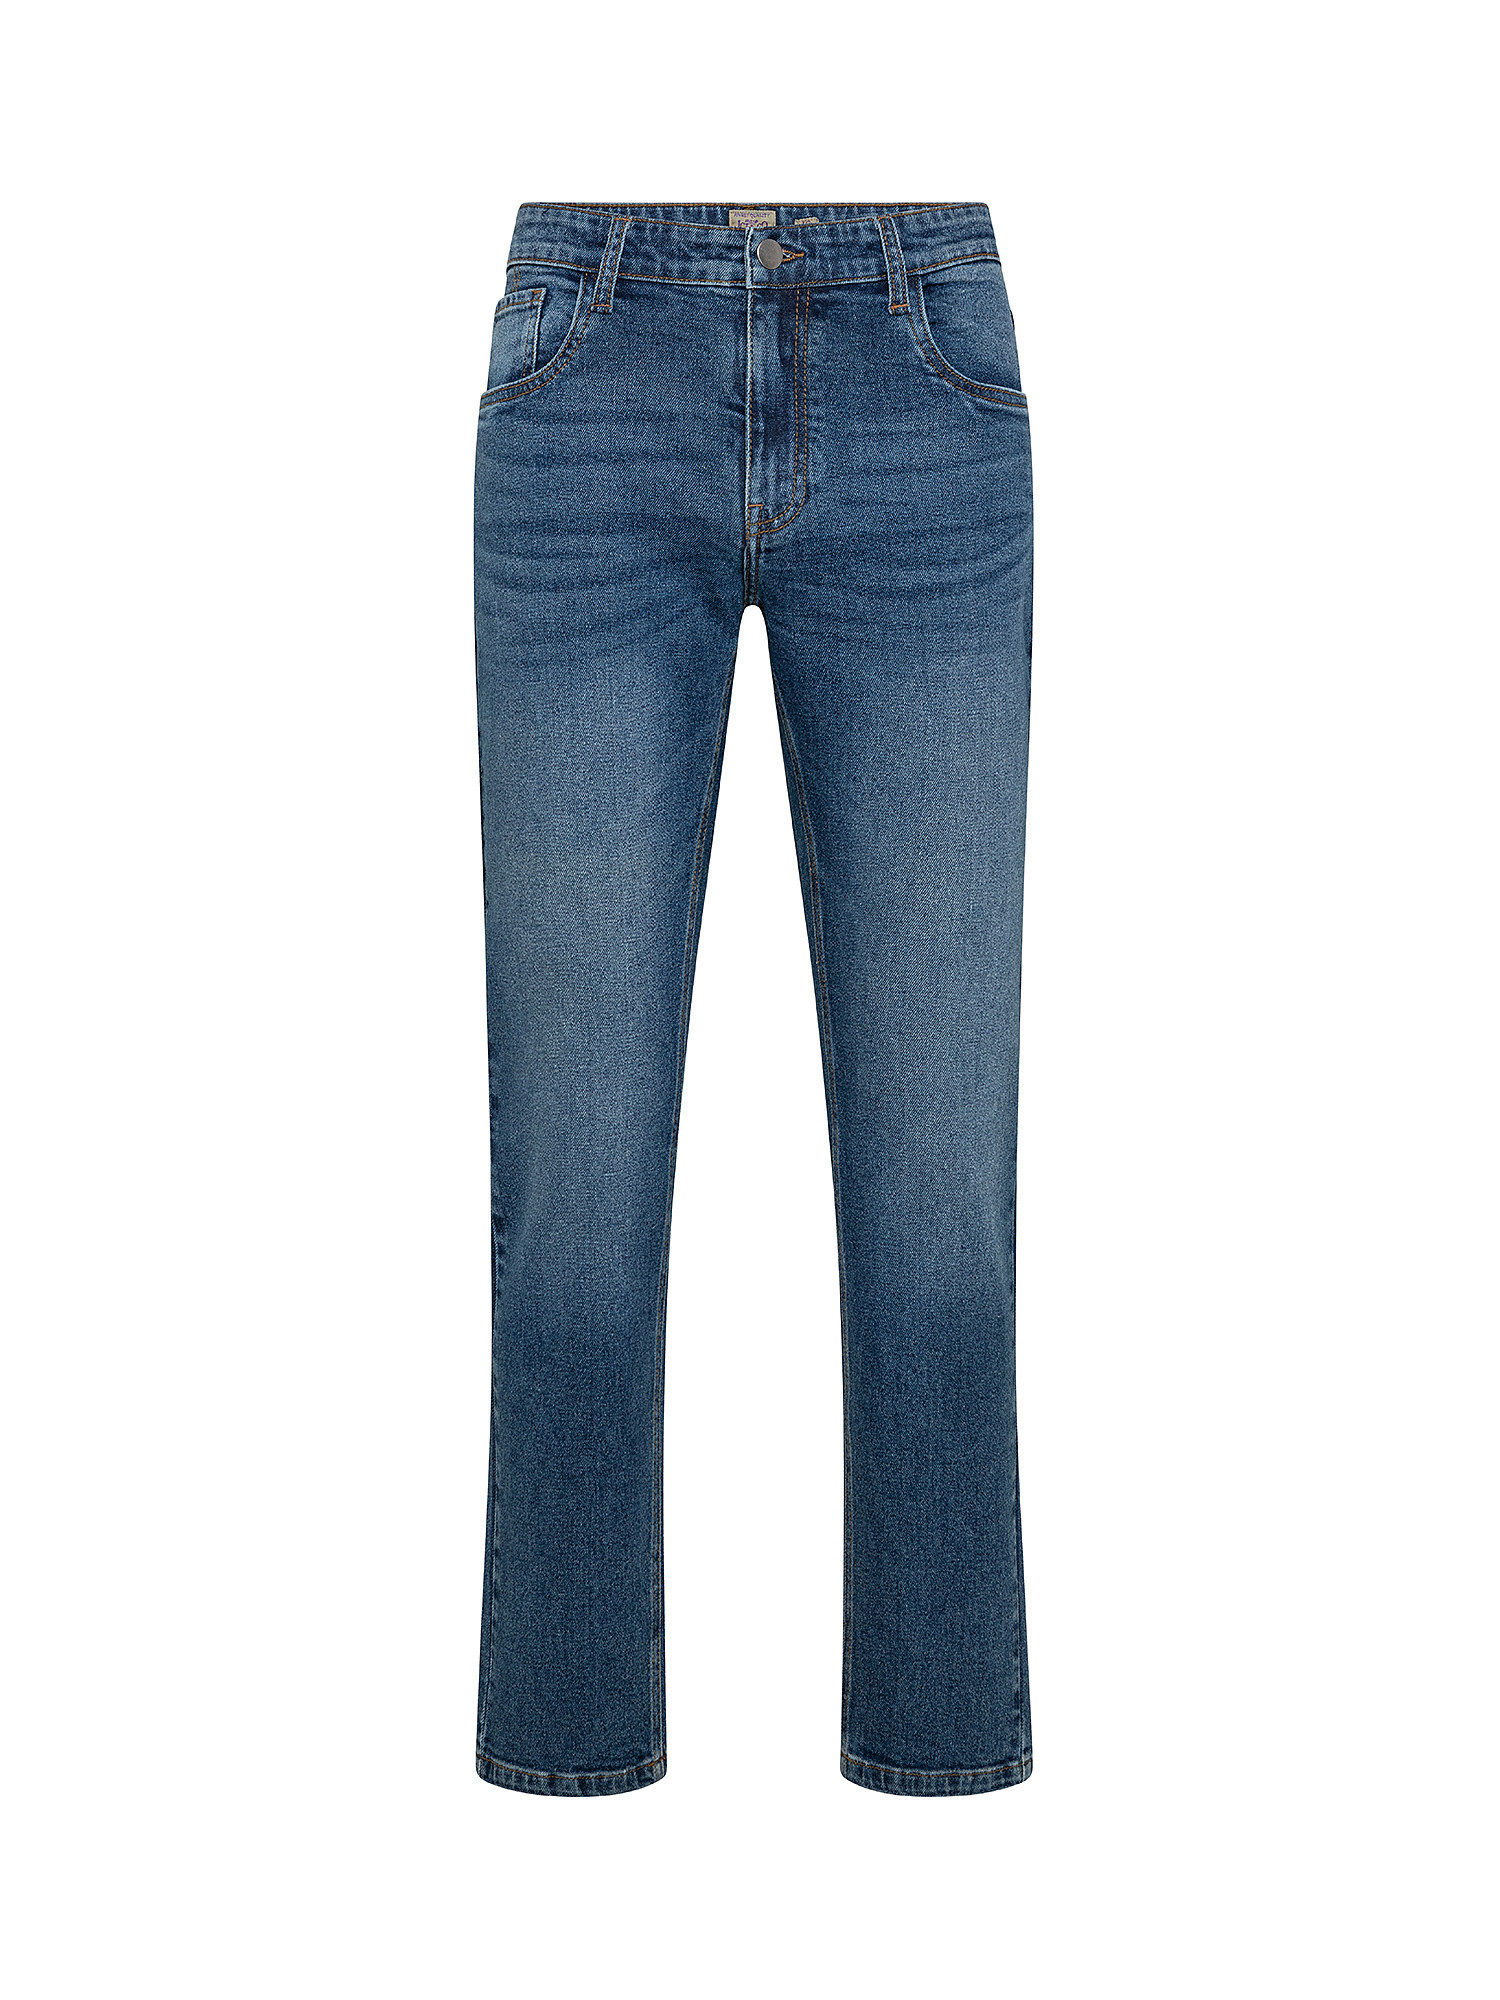 Five pocket jeans, Dark Blue, large image number 0